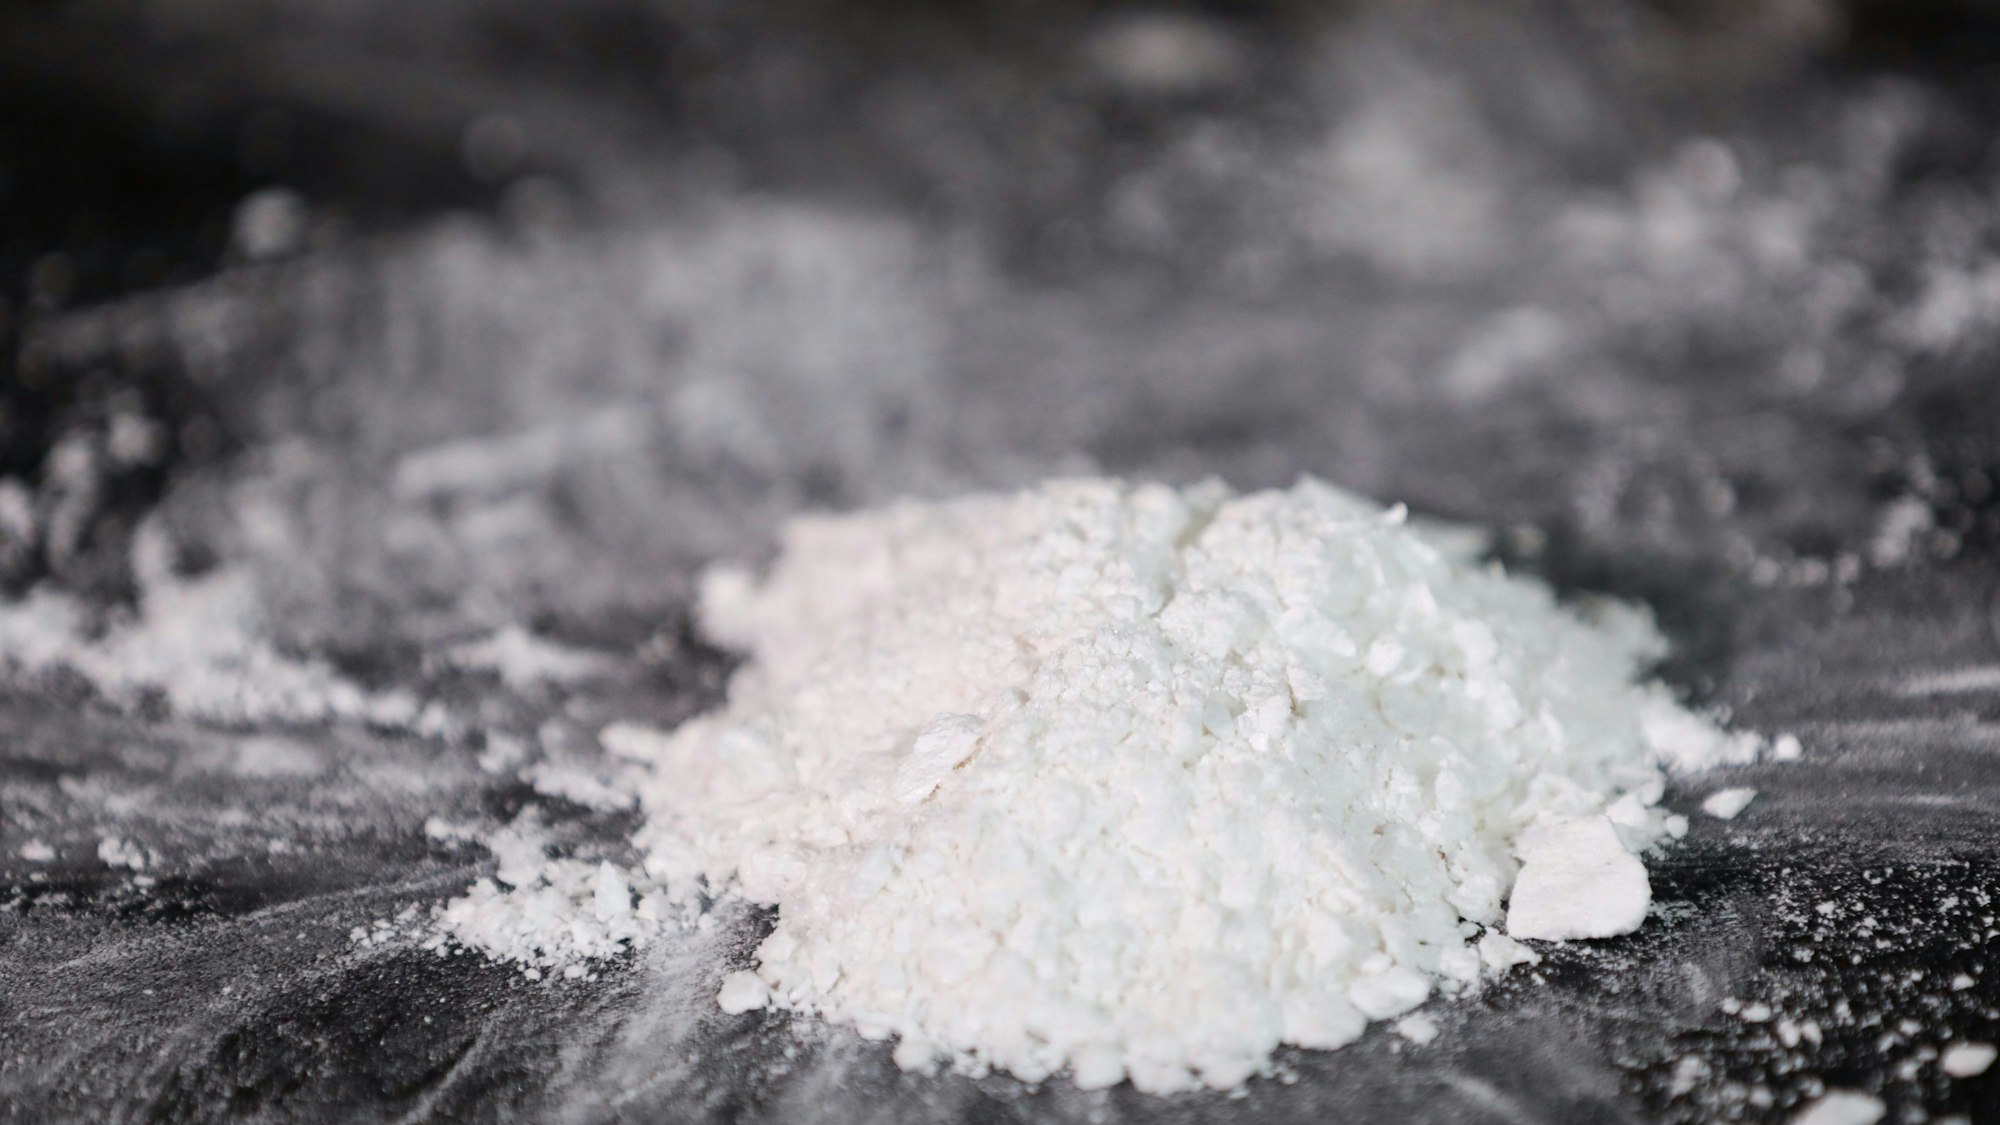 Das Bild zeigt ein weißes Häufchen Kokain auf einen Spiegel.